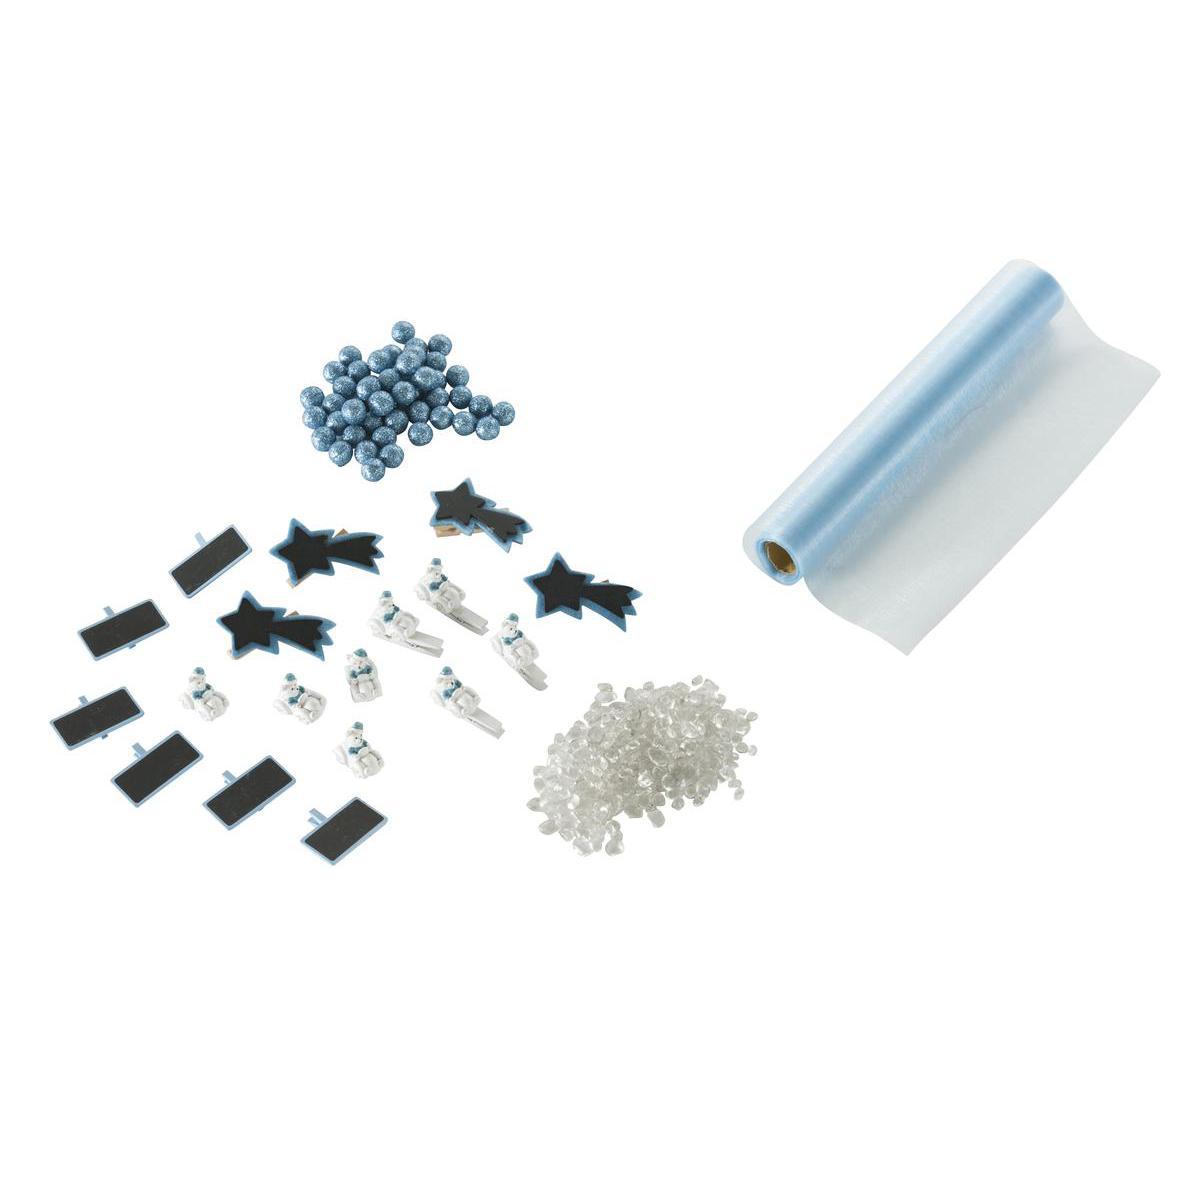 Kit de déco table polaire - Plastique - 16 x 32 x H 4 cm - Blanc et bleu